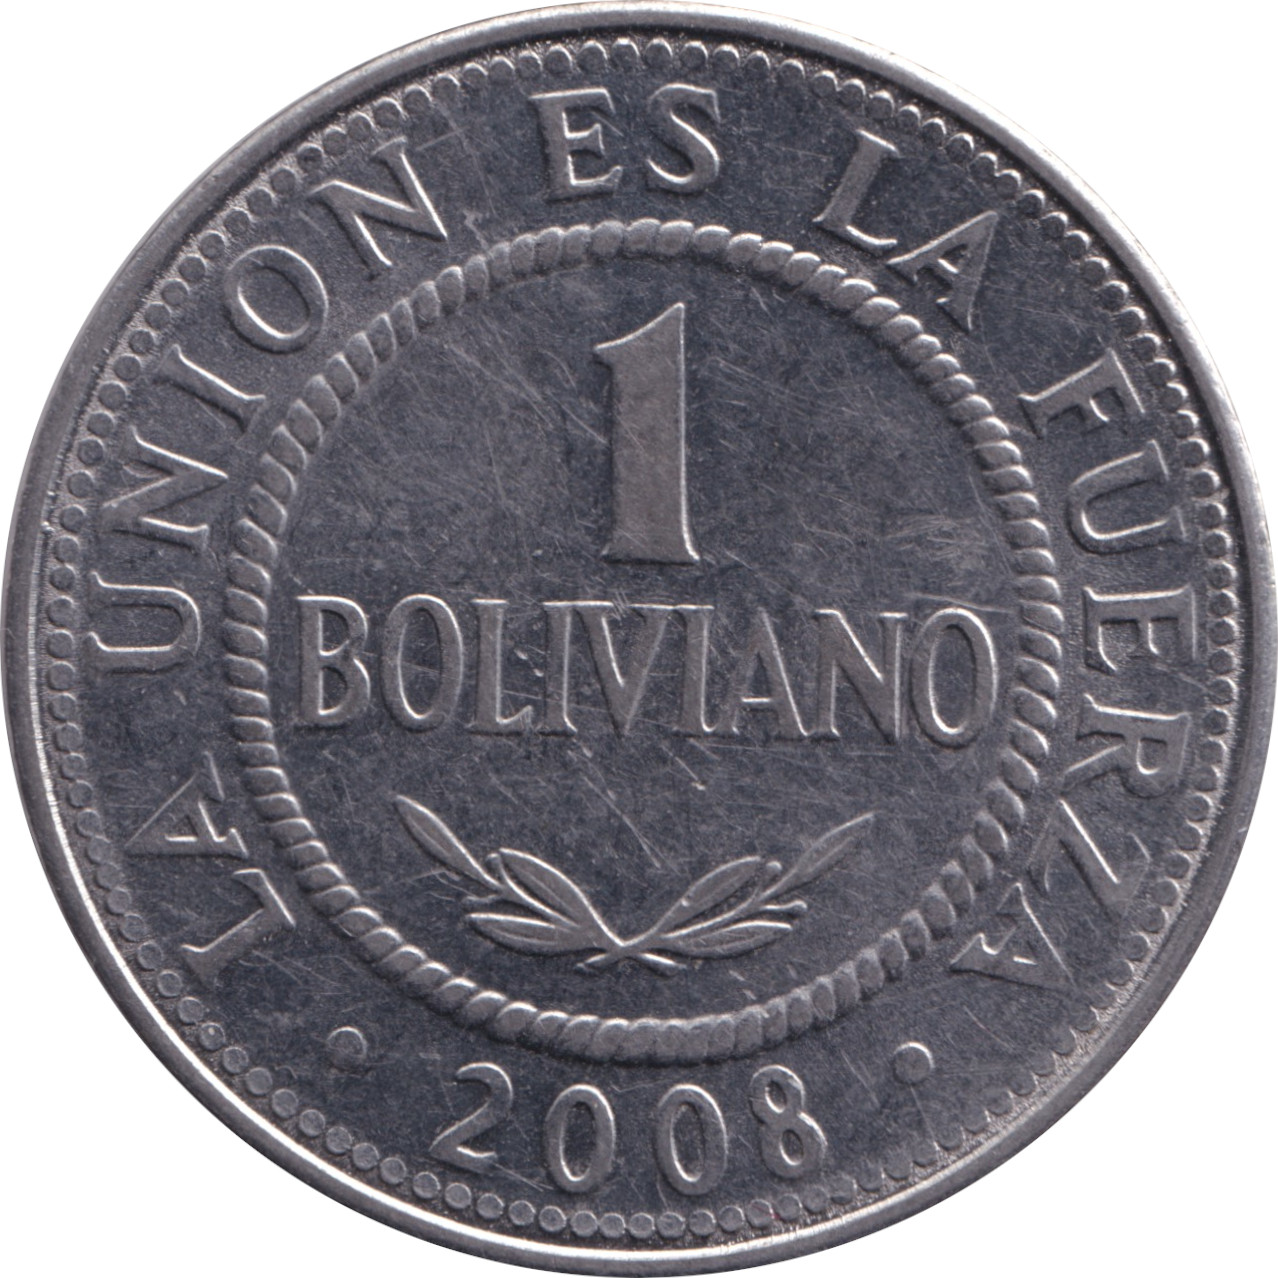 1 boliviano - République de Bolivie